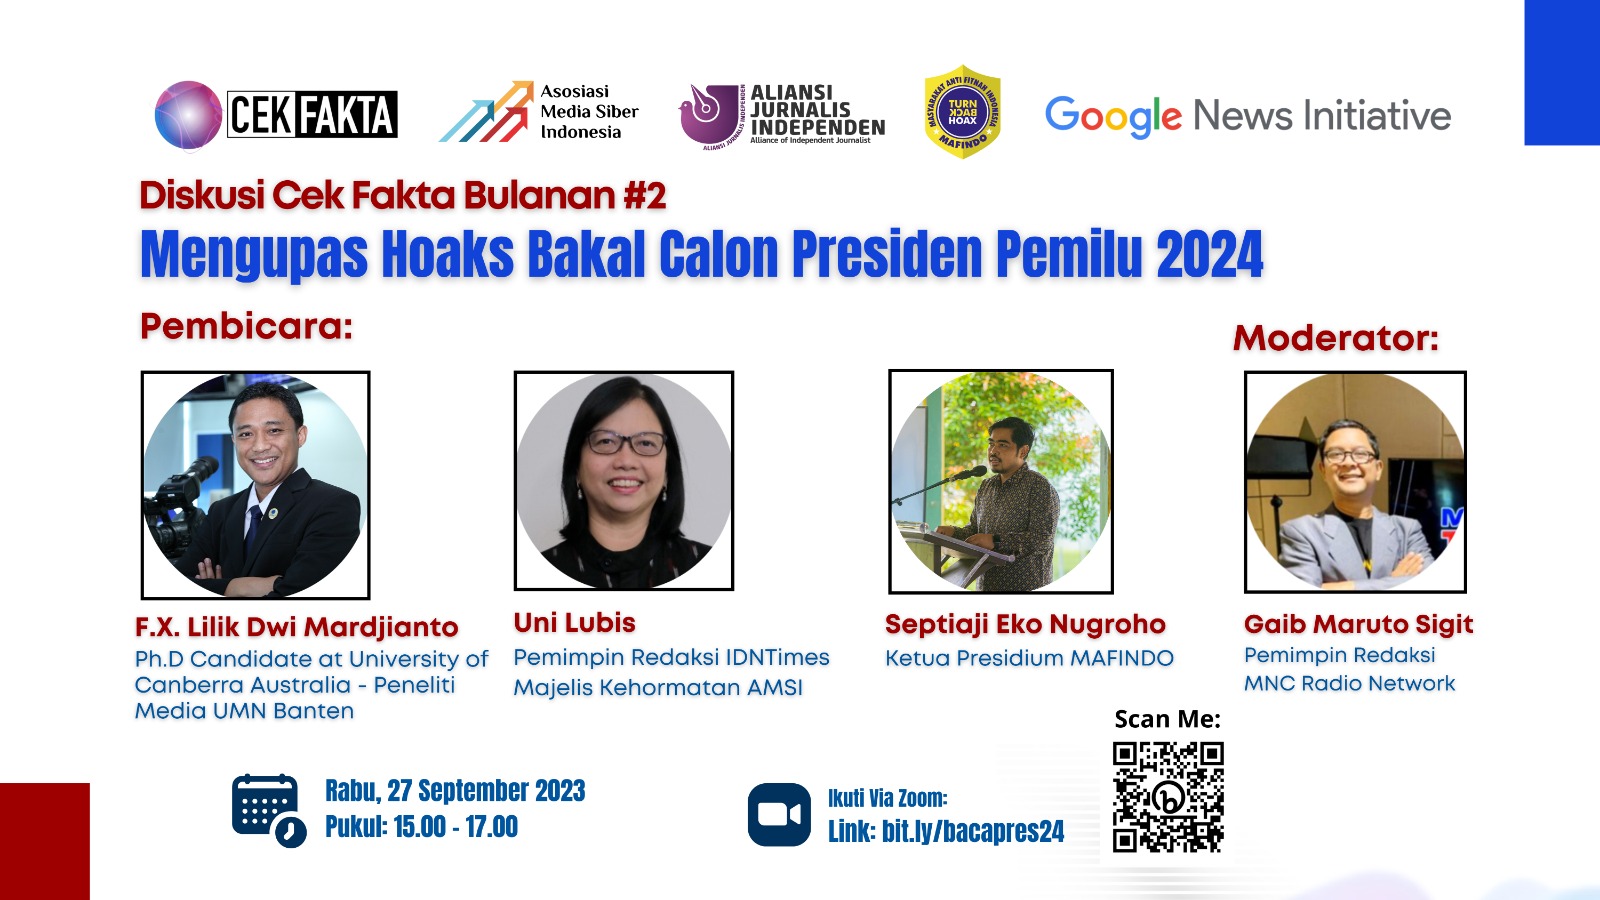 diskusi bulanan seri kedua yang digelar Asosiasi Media Siber Indonesia (AMSI), Aliansi Jurnalis Independen (AJI), Masyarakat Anti Fitnah Indonesia (Mafindo) yang tergabung dalam koalisi cek fakta, serta didukung penuh oleh Google News Initiative, pada Rabu 27 September 2023.